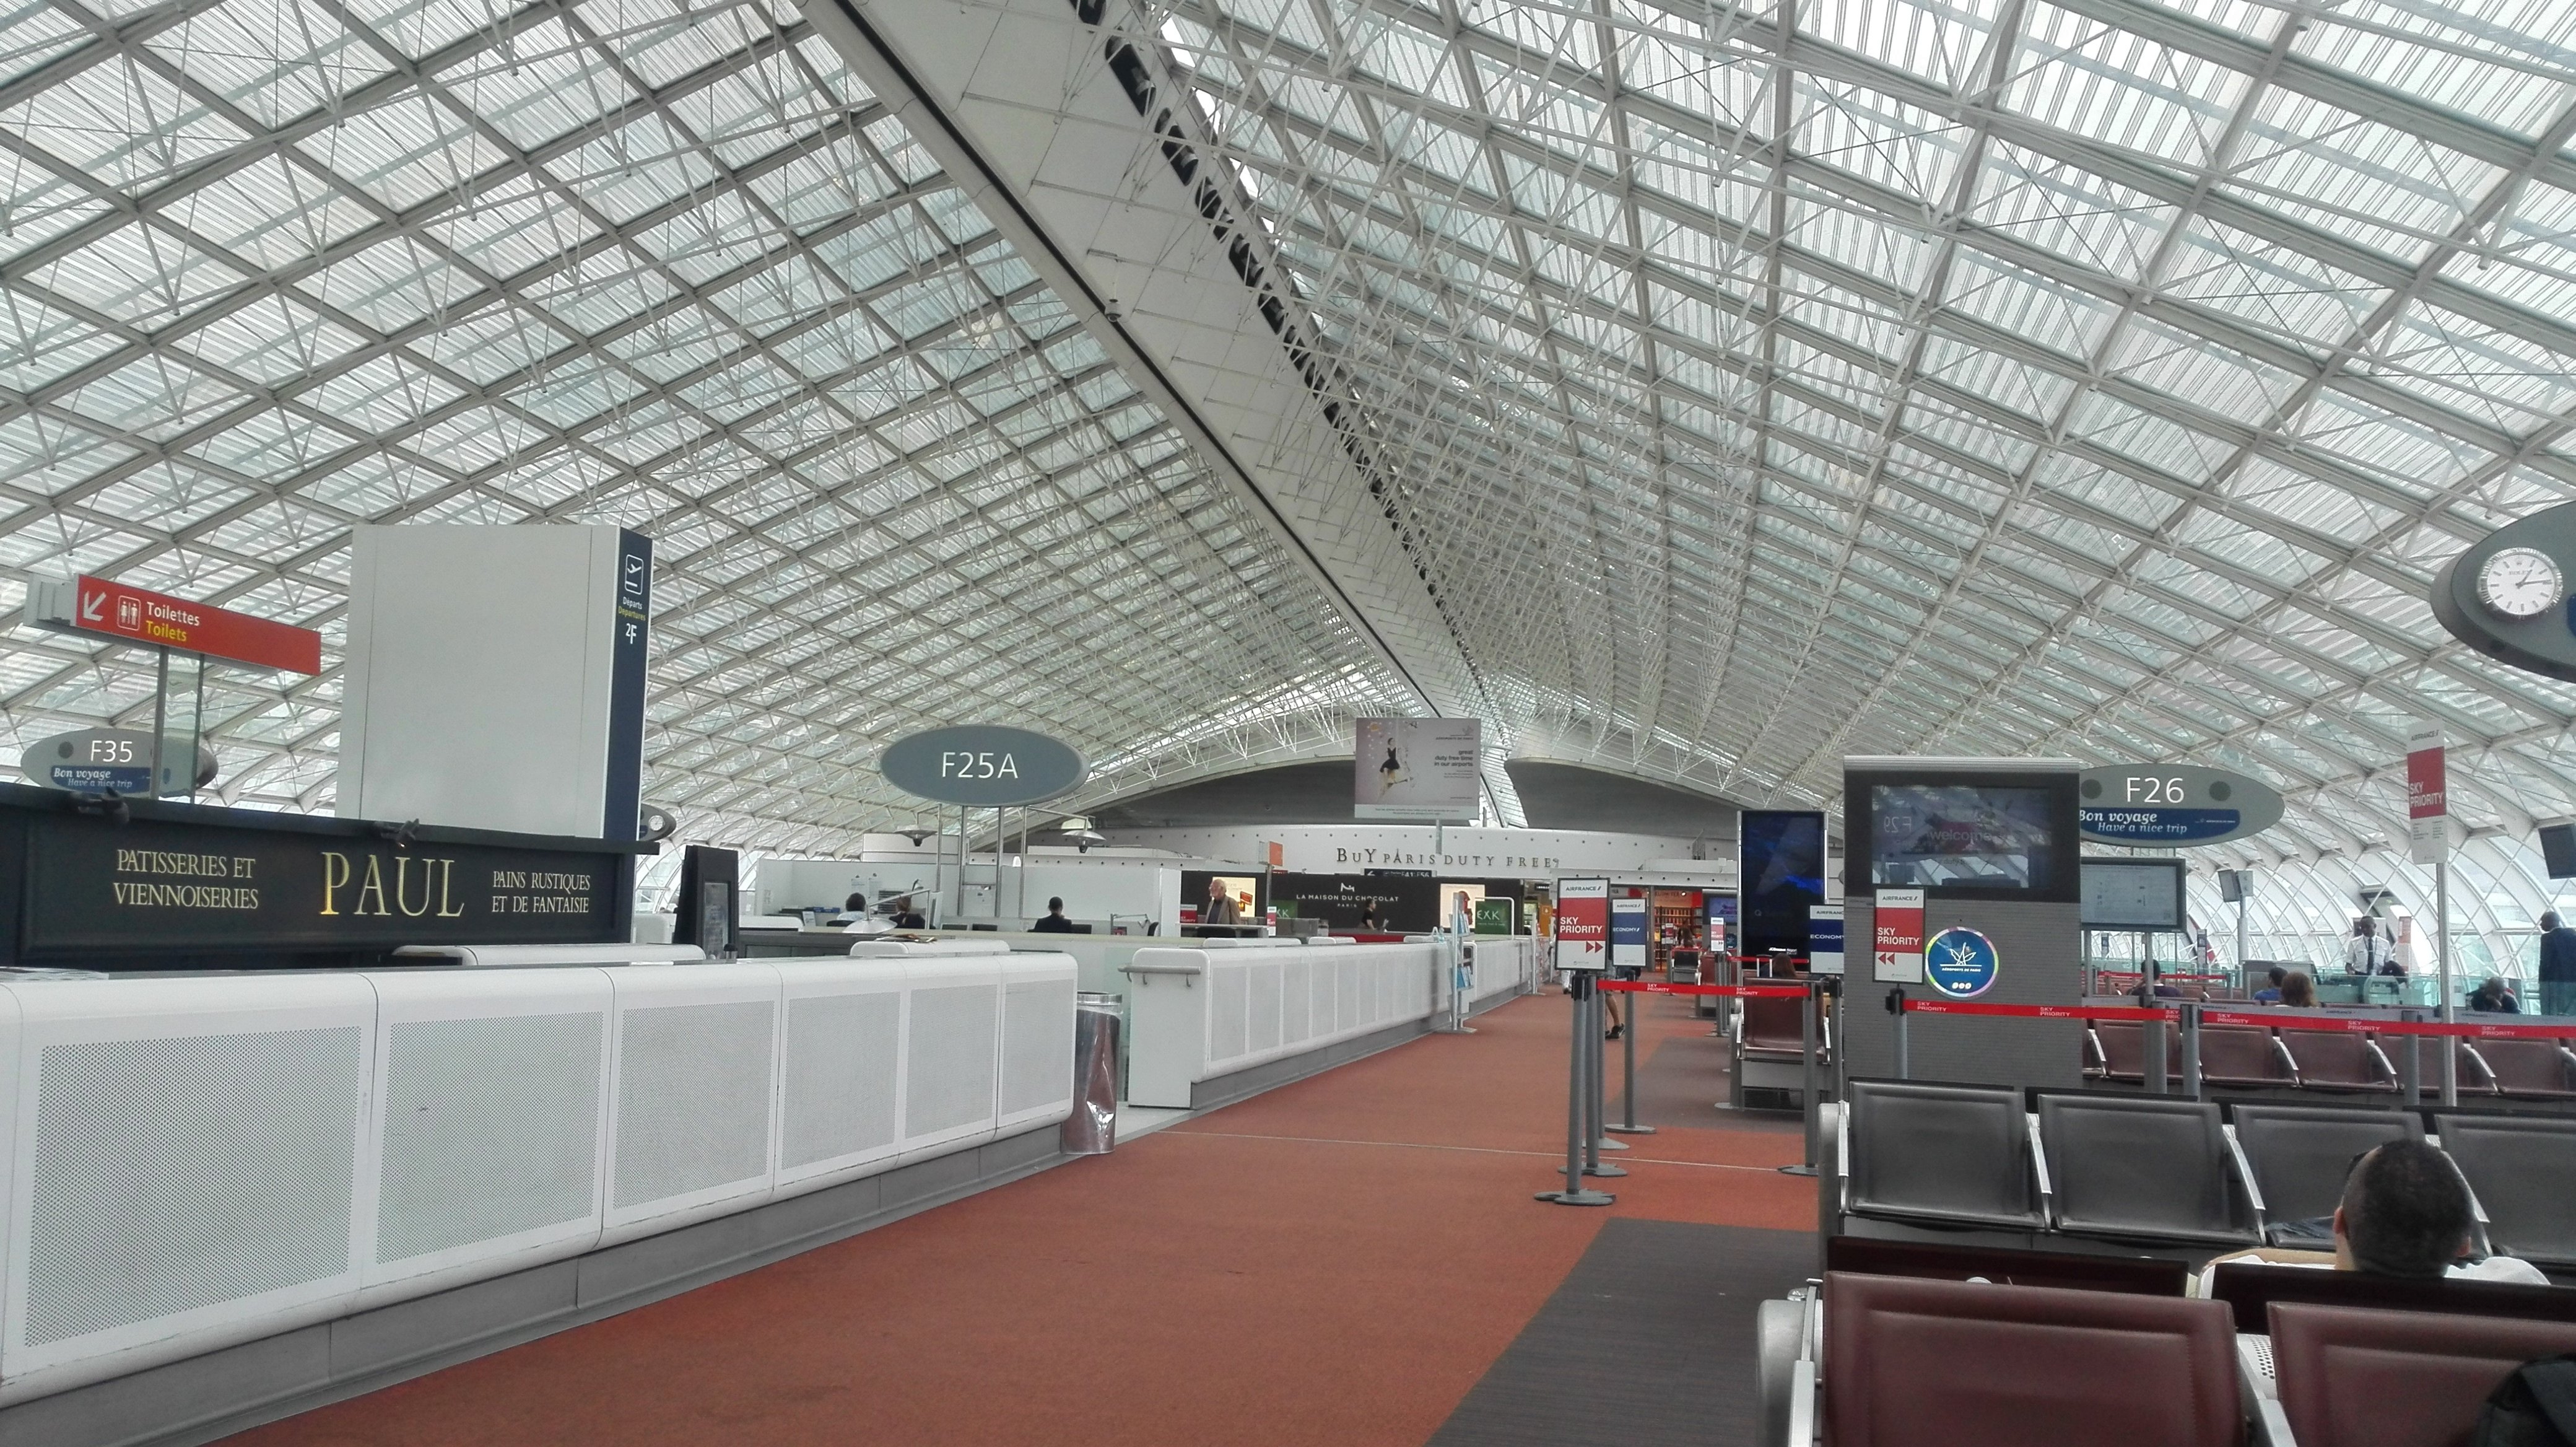 巴黎勒布尔热机场图片